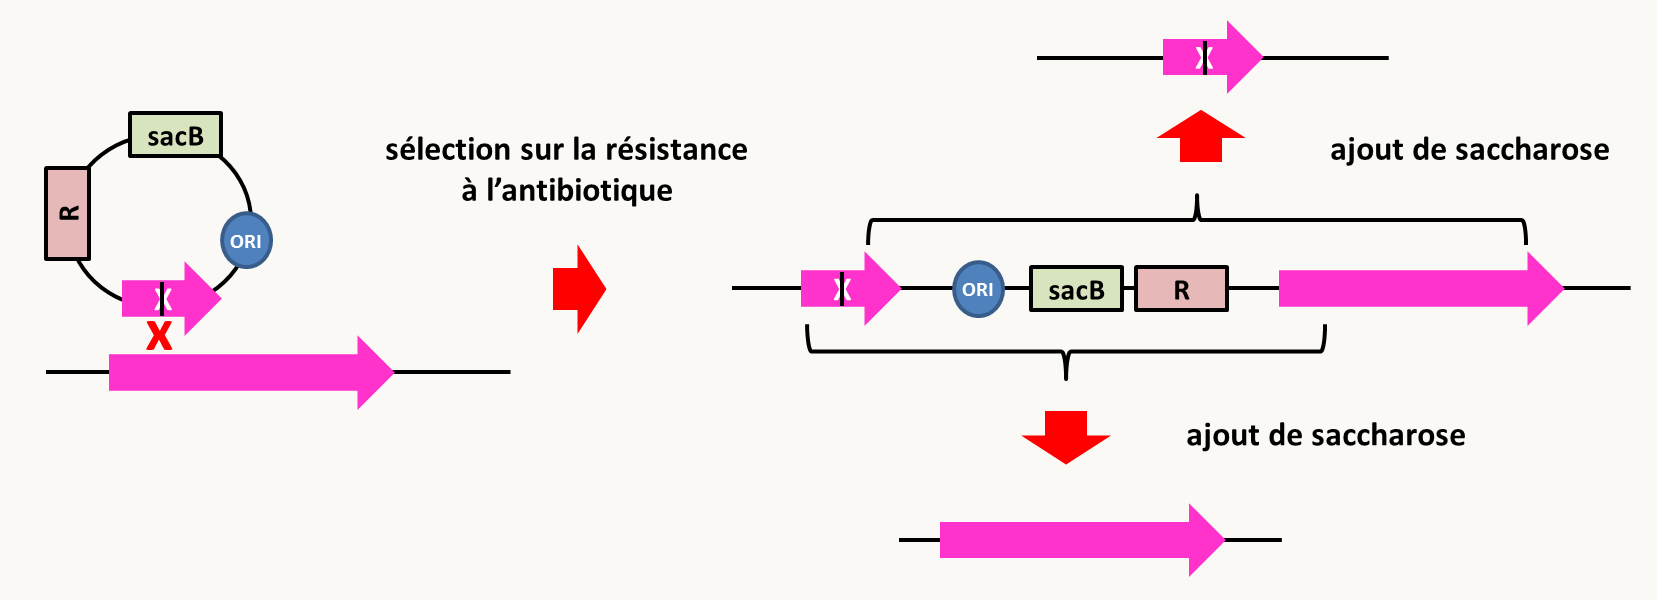 remplacement de gènes chez Bacillus subtilis. Voir texte pour le détail de la stratégie.